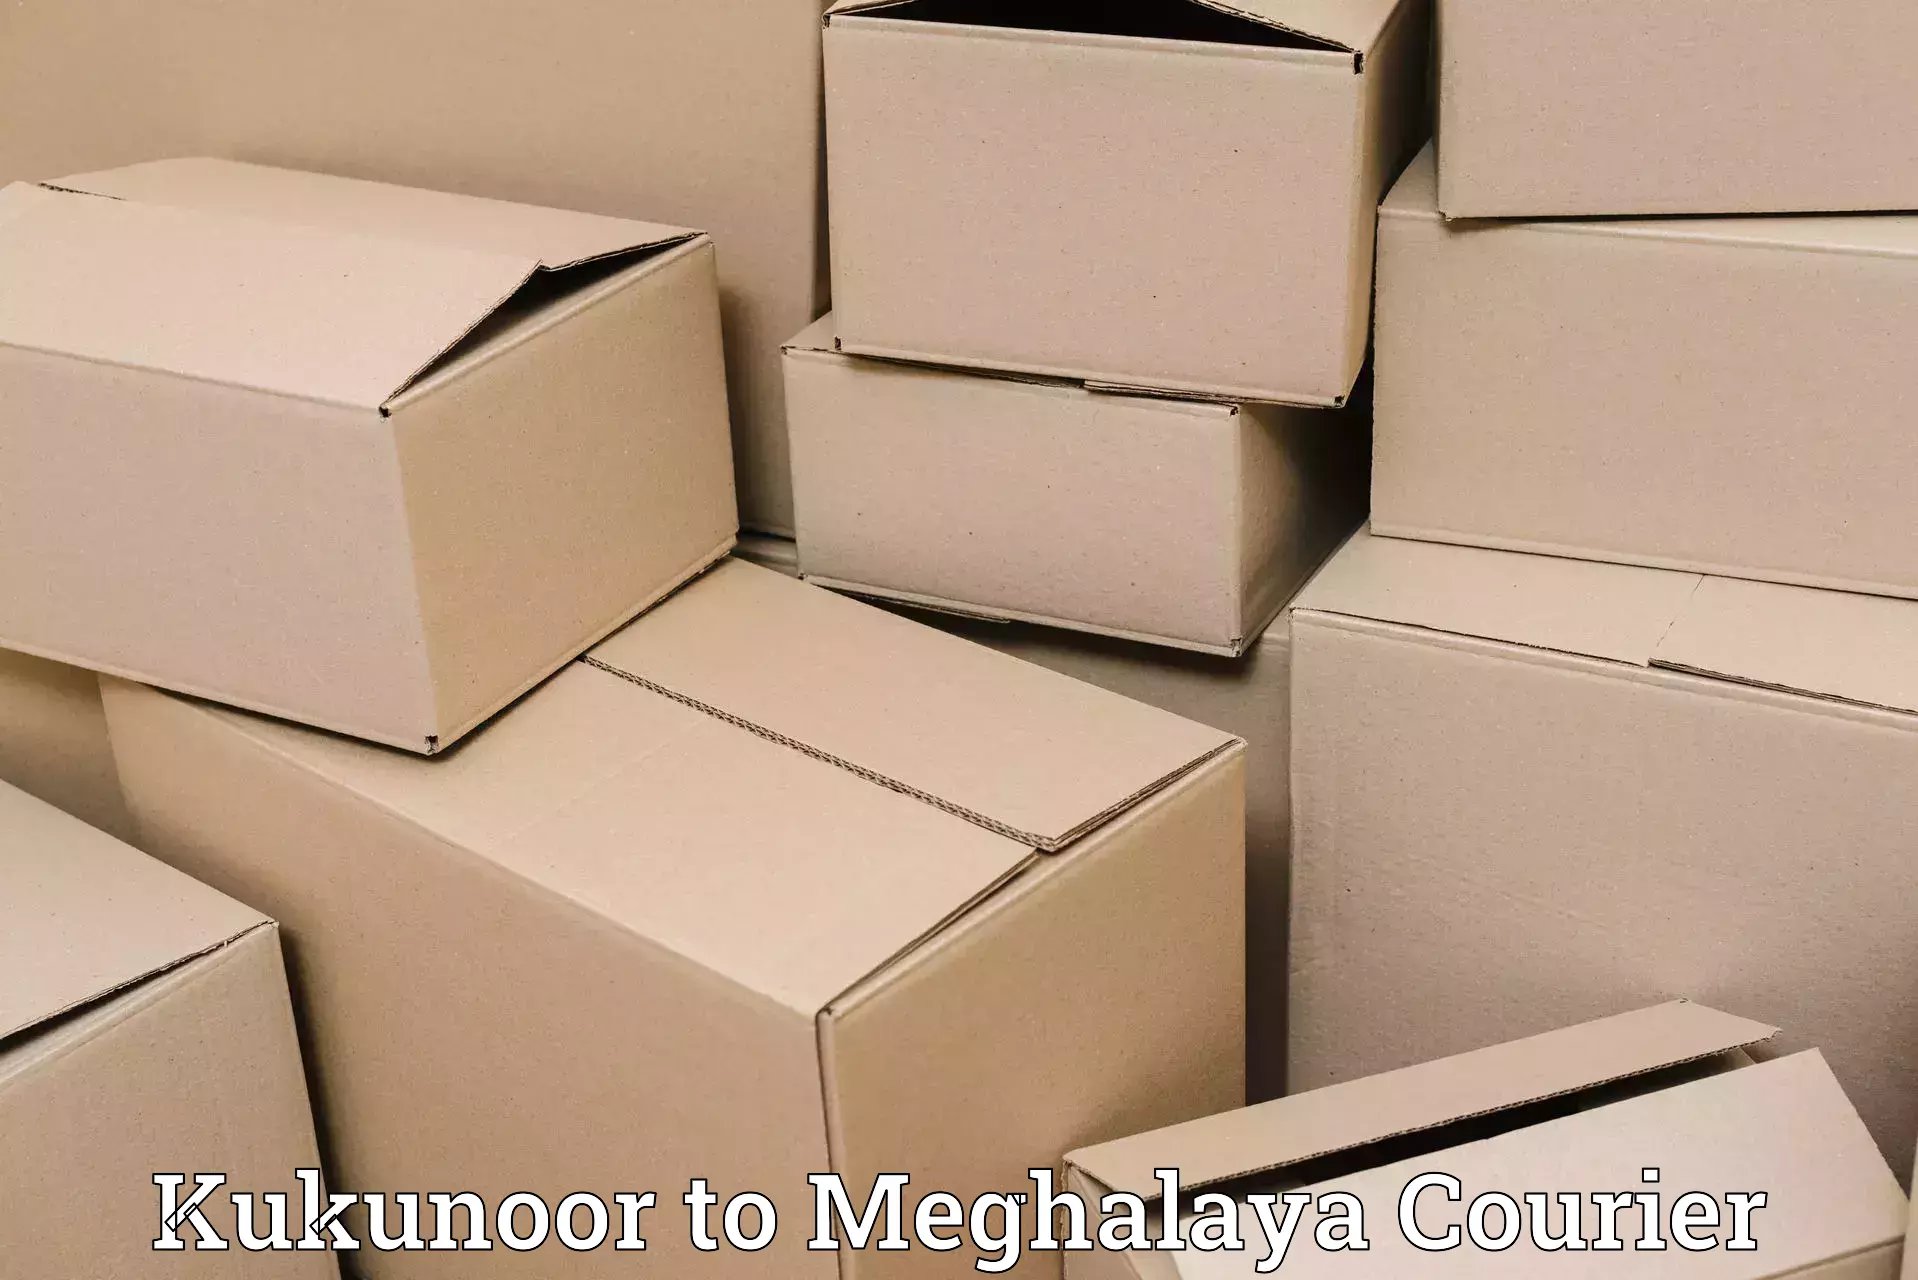 Premium delivery services Kukunoor to Jowai